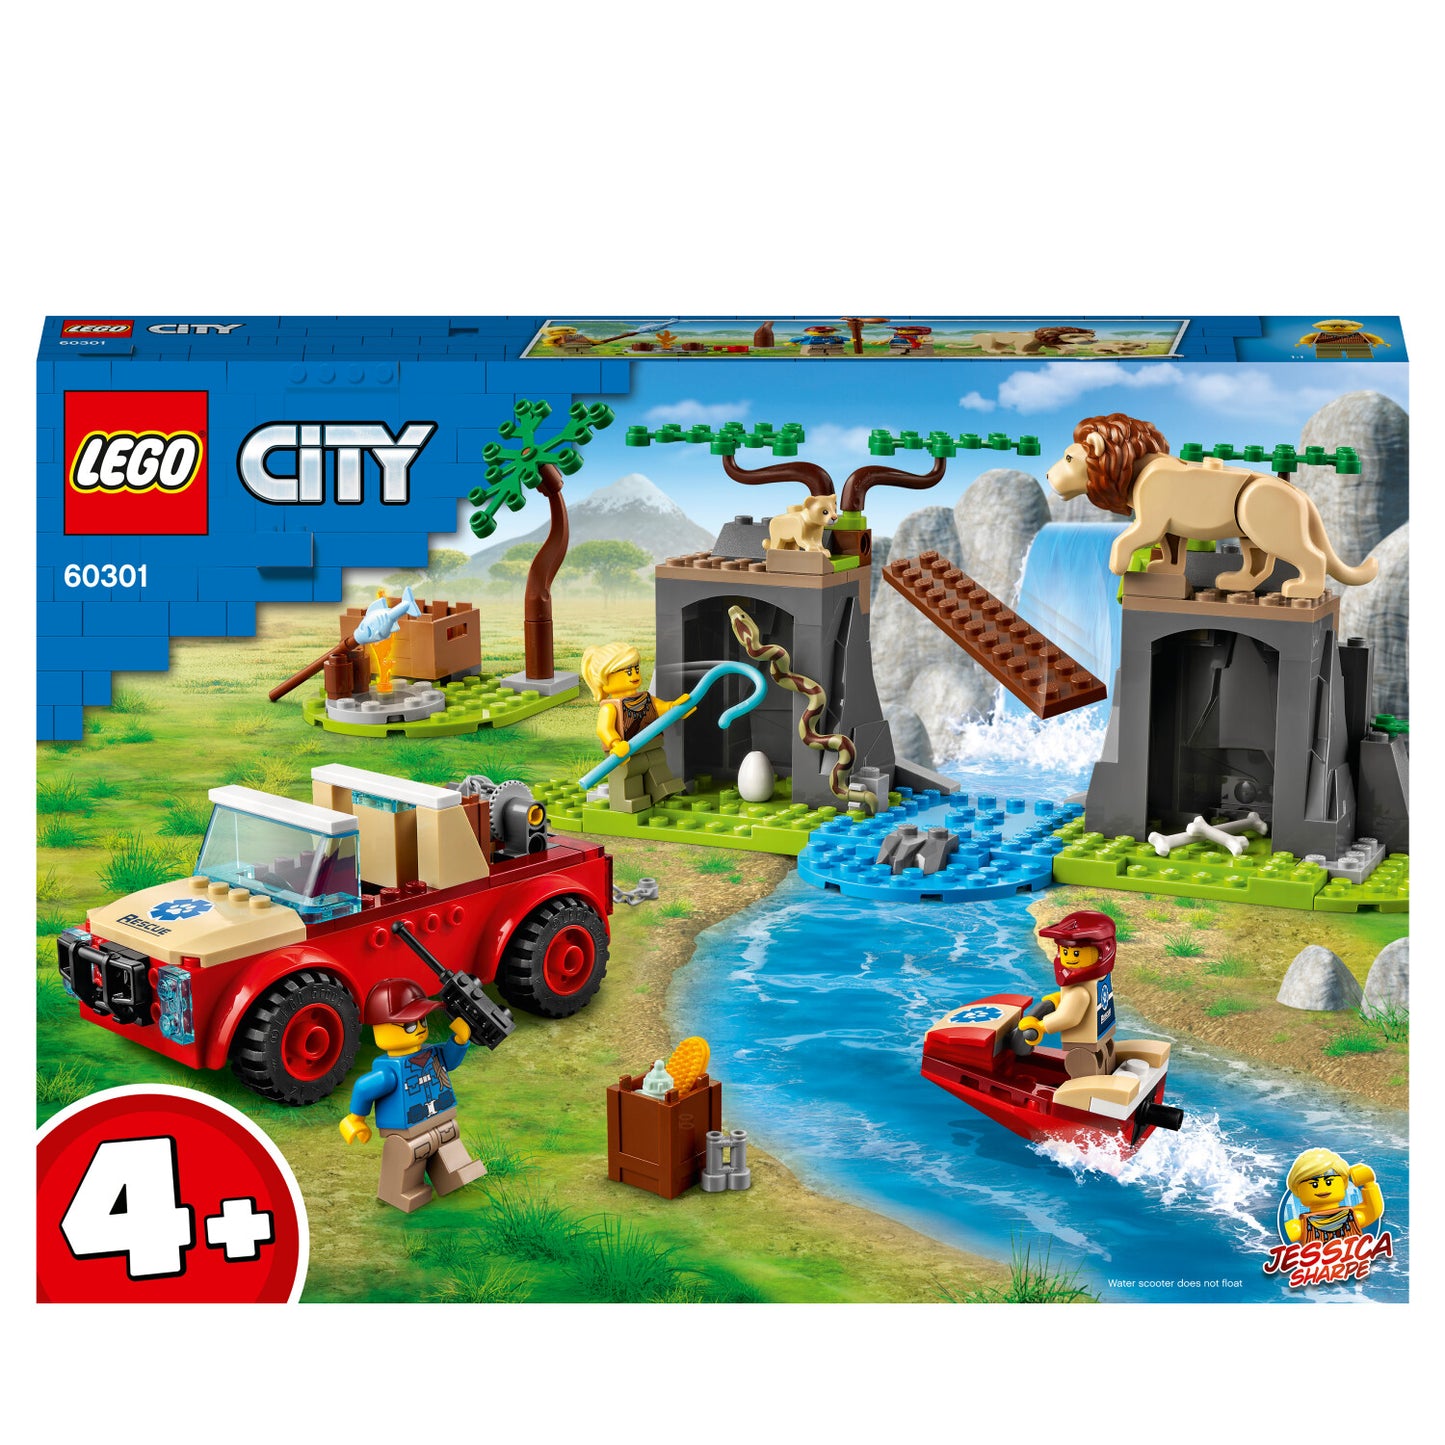 LEGO 60301 City Tierrettungs-Geländewagen ab 4+